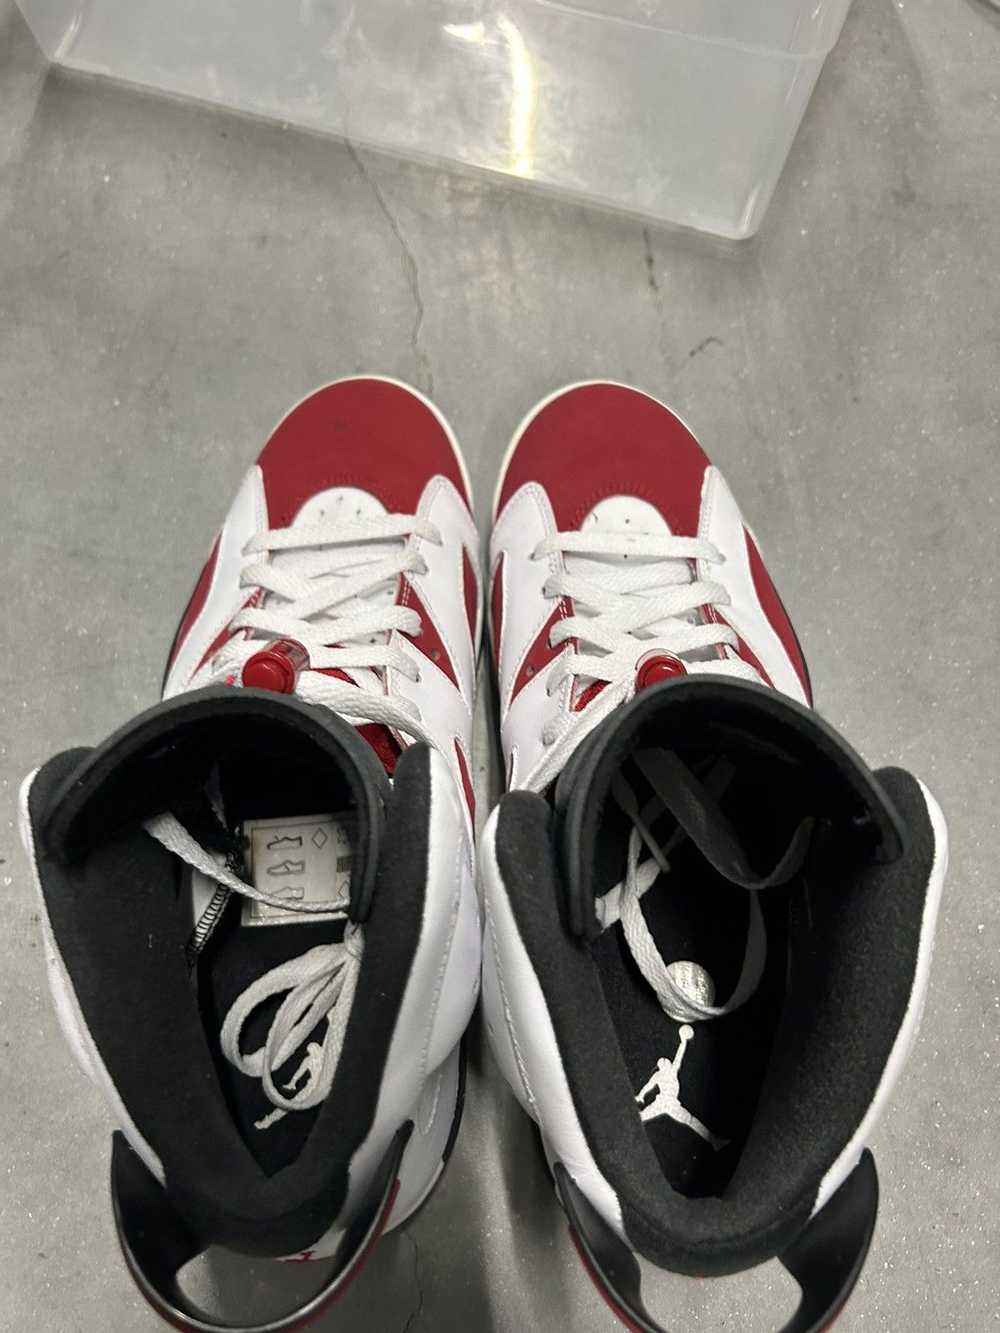 Jordan Brand × Nike Jordan 6 Carmine 2014 9 - image 5